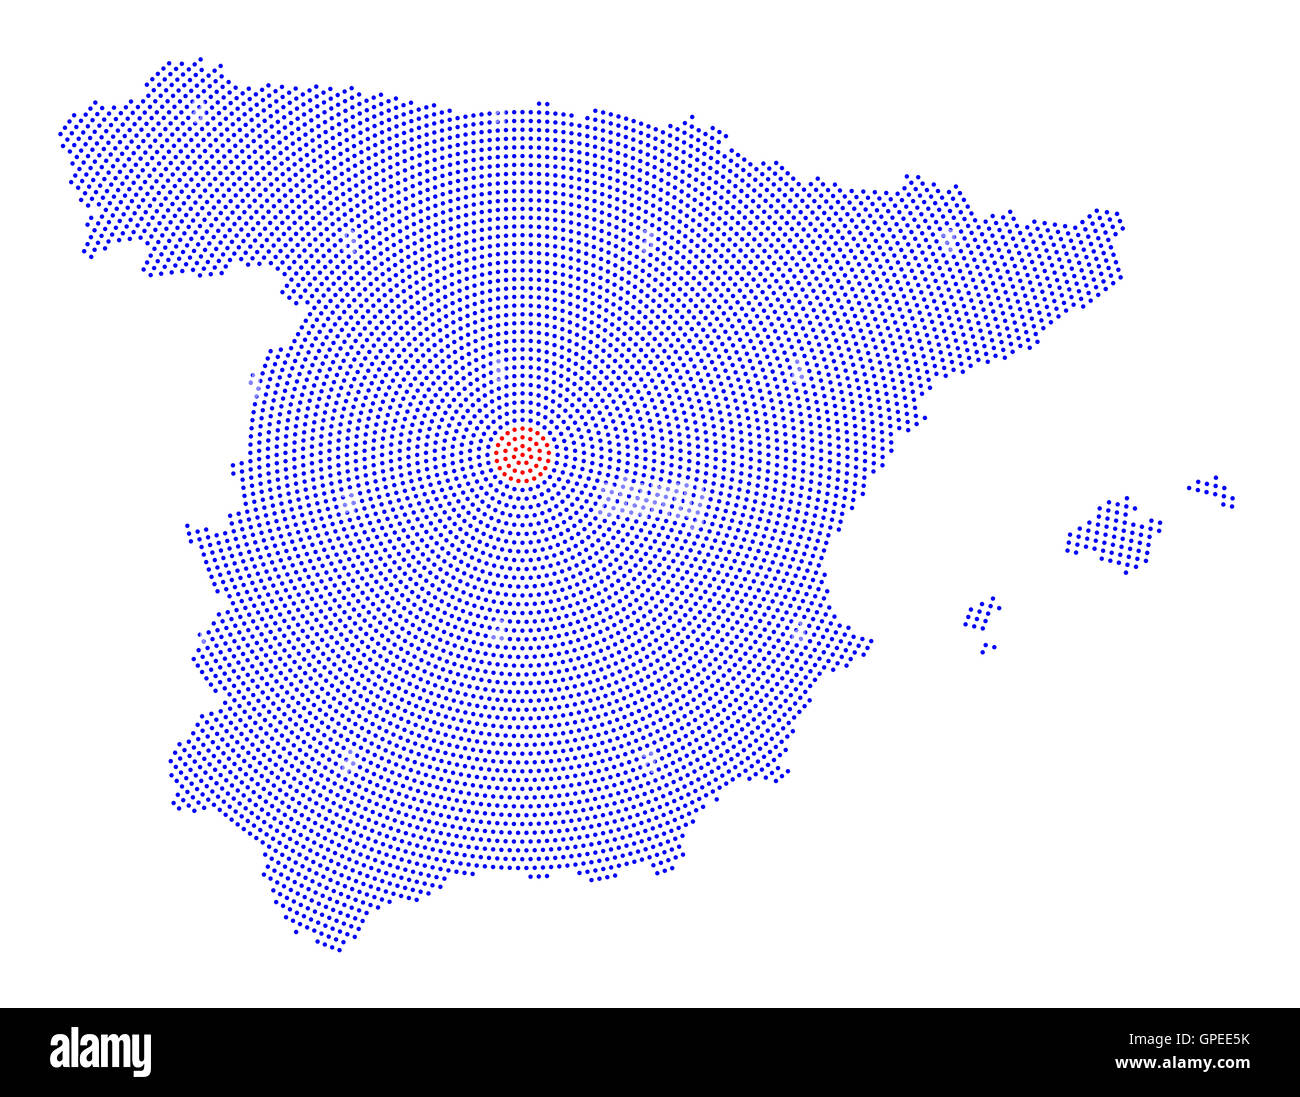 Spagna mappa radiale pattern a punti. Punti blu che va dal rosso punteggiato di Madrid capitale verso l'esterno e forma la silhouette di paese. Foto Stock